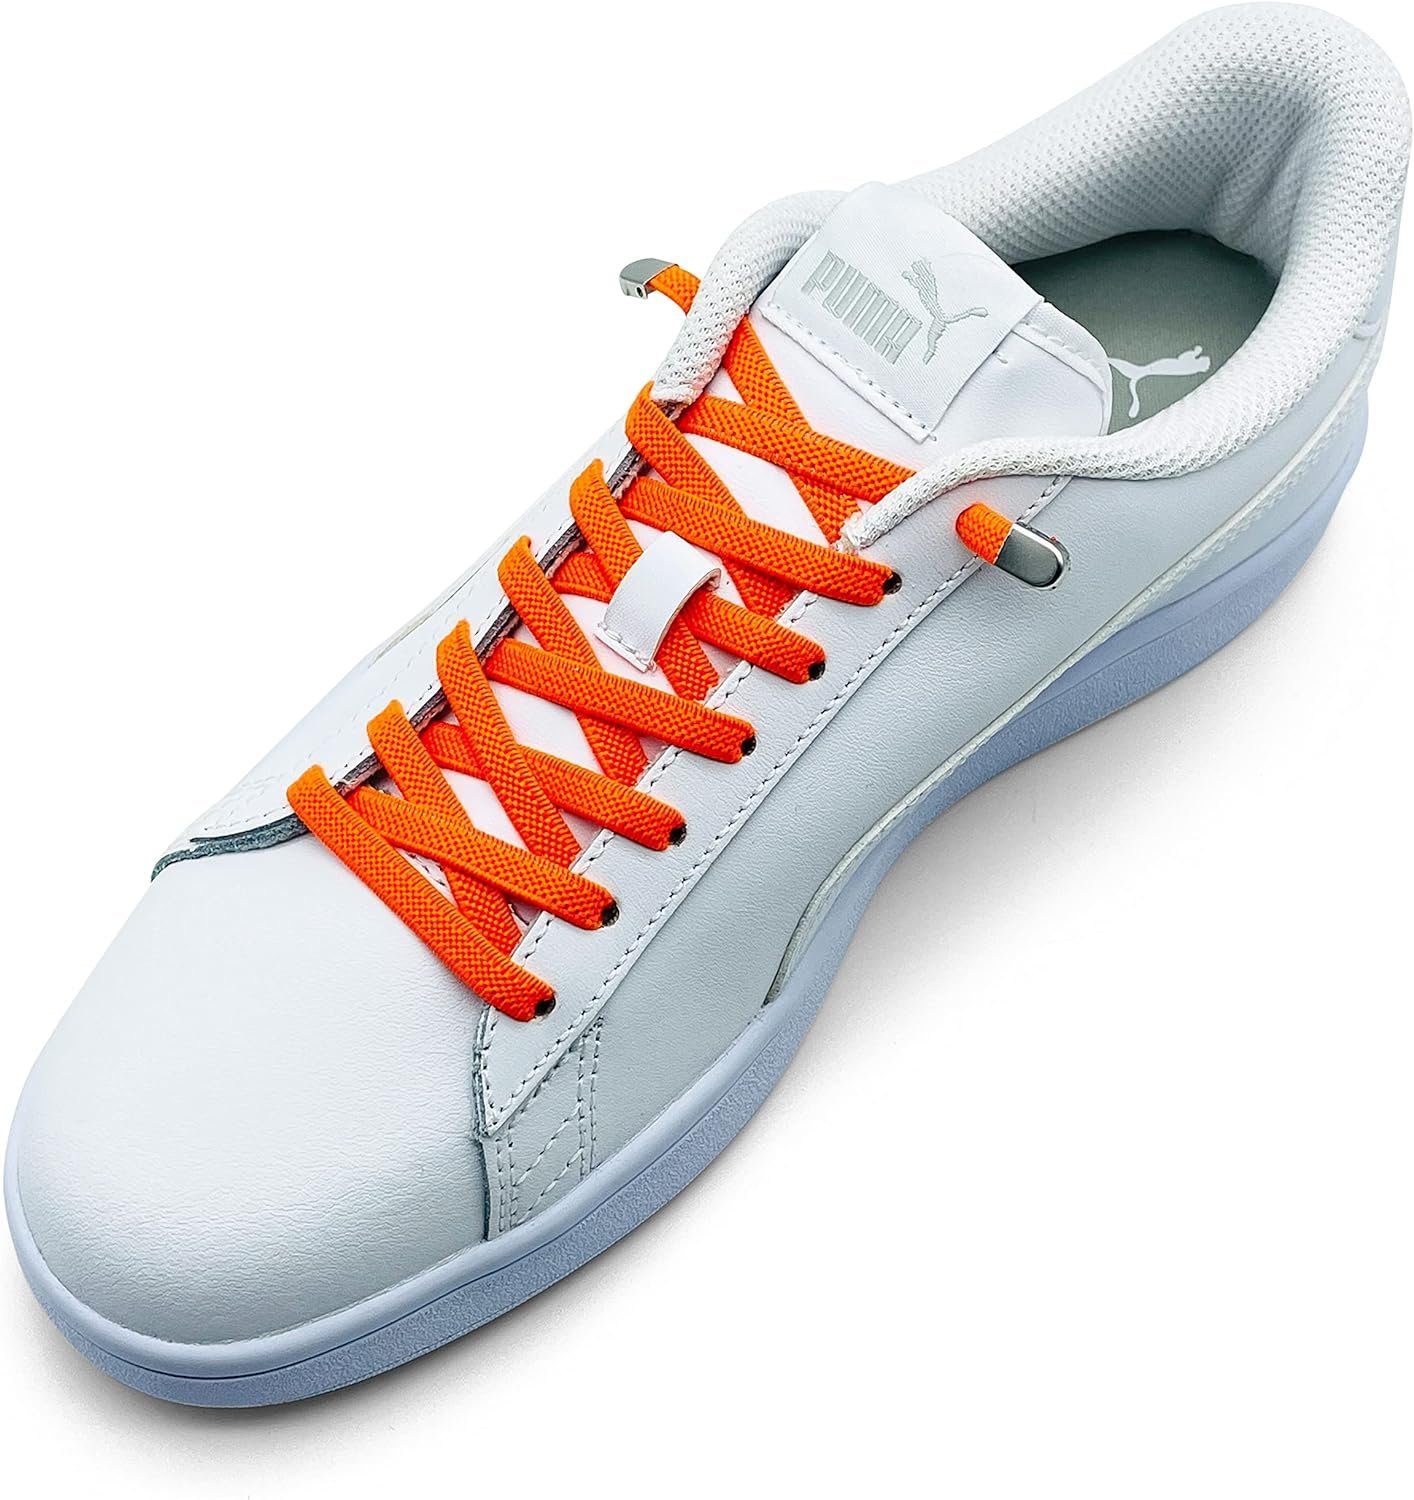 ELANOX Schnürsenkel 4 Stück für 2 Paar Schuhe elastische Schnürsenkel mit Clips, inkl. Enden (Clips) - 8 St. in silber orange